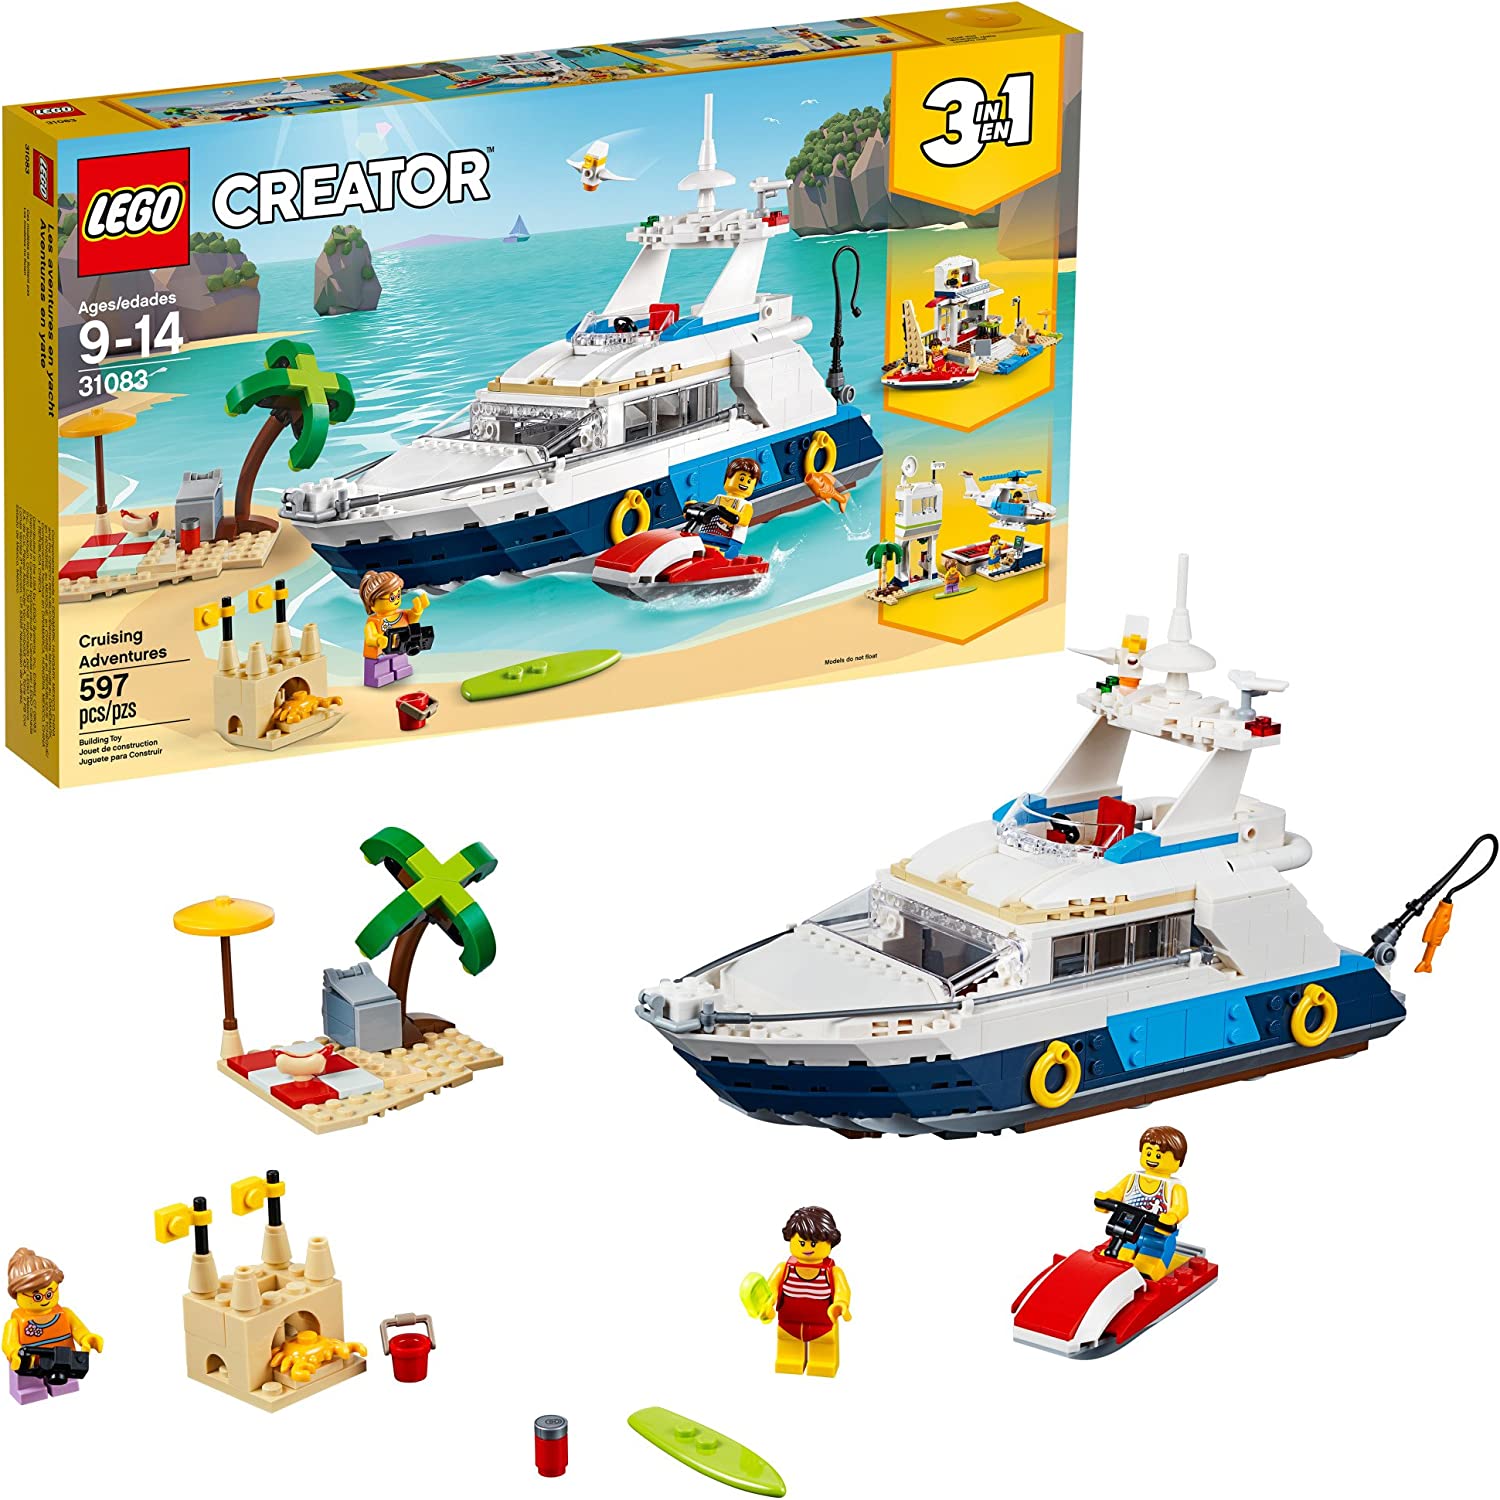 Cruising Adventures - LEGO Creator Set [RETIRED]